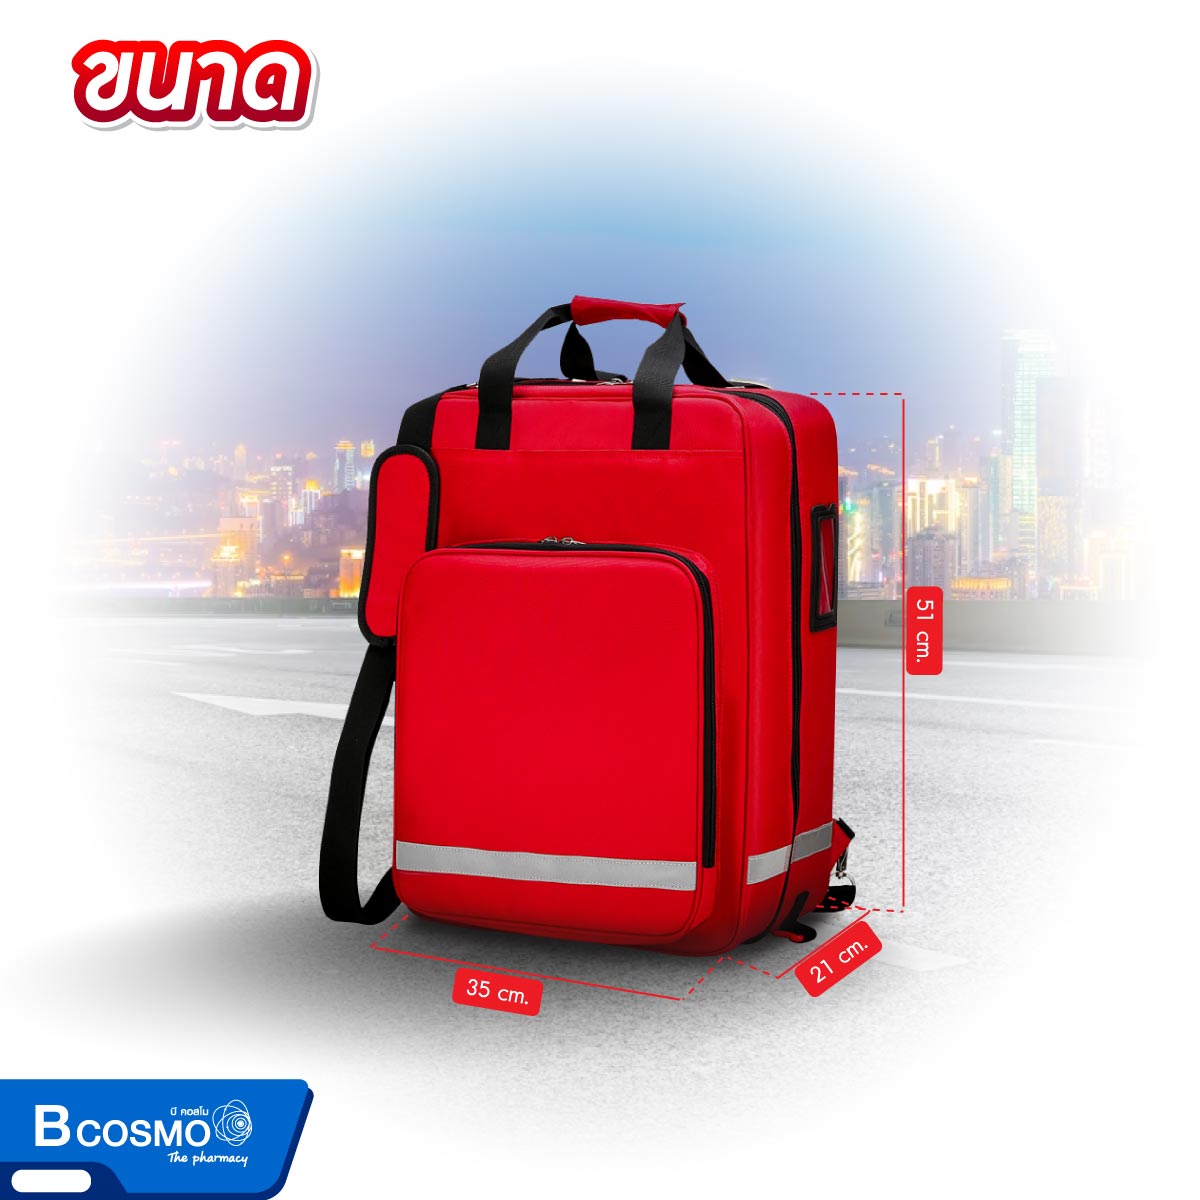 กระเป๋าล้อลากกู้ชีพฉุกเฉิน ขนาด 51x35x21 cm. สีแดง